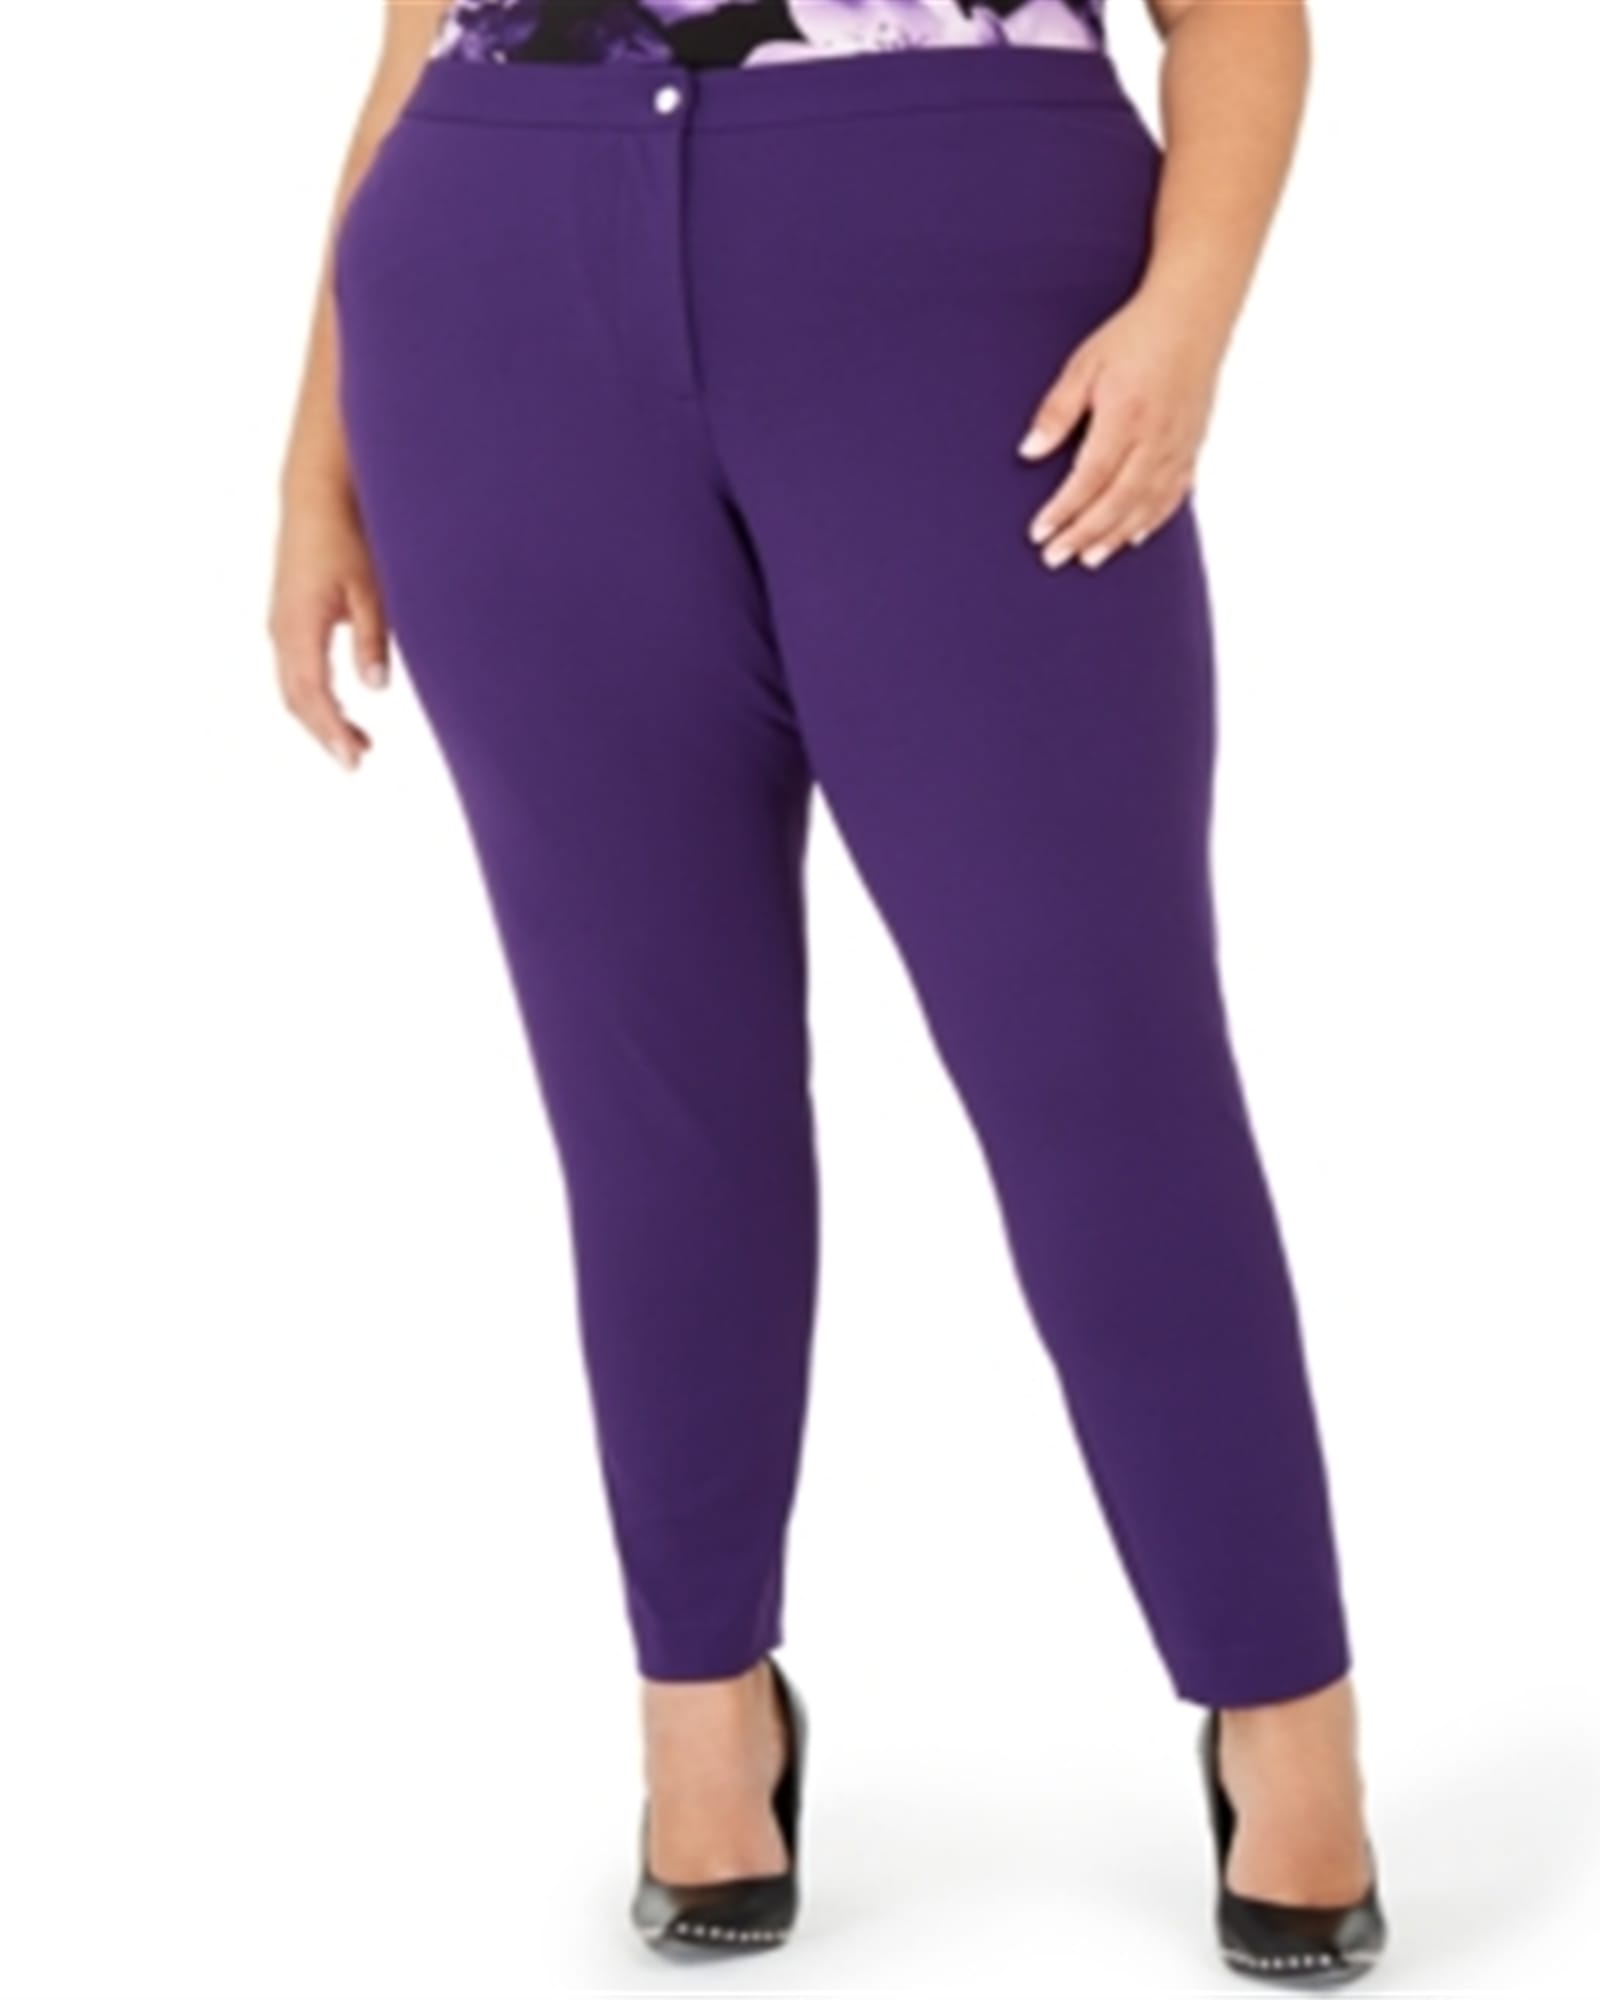 Women's purple Pants